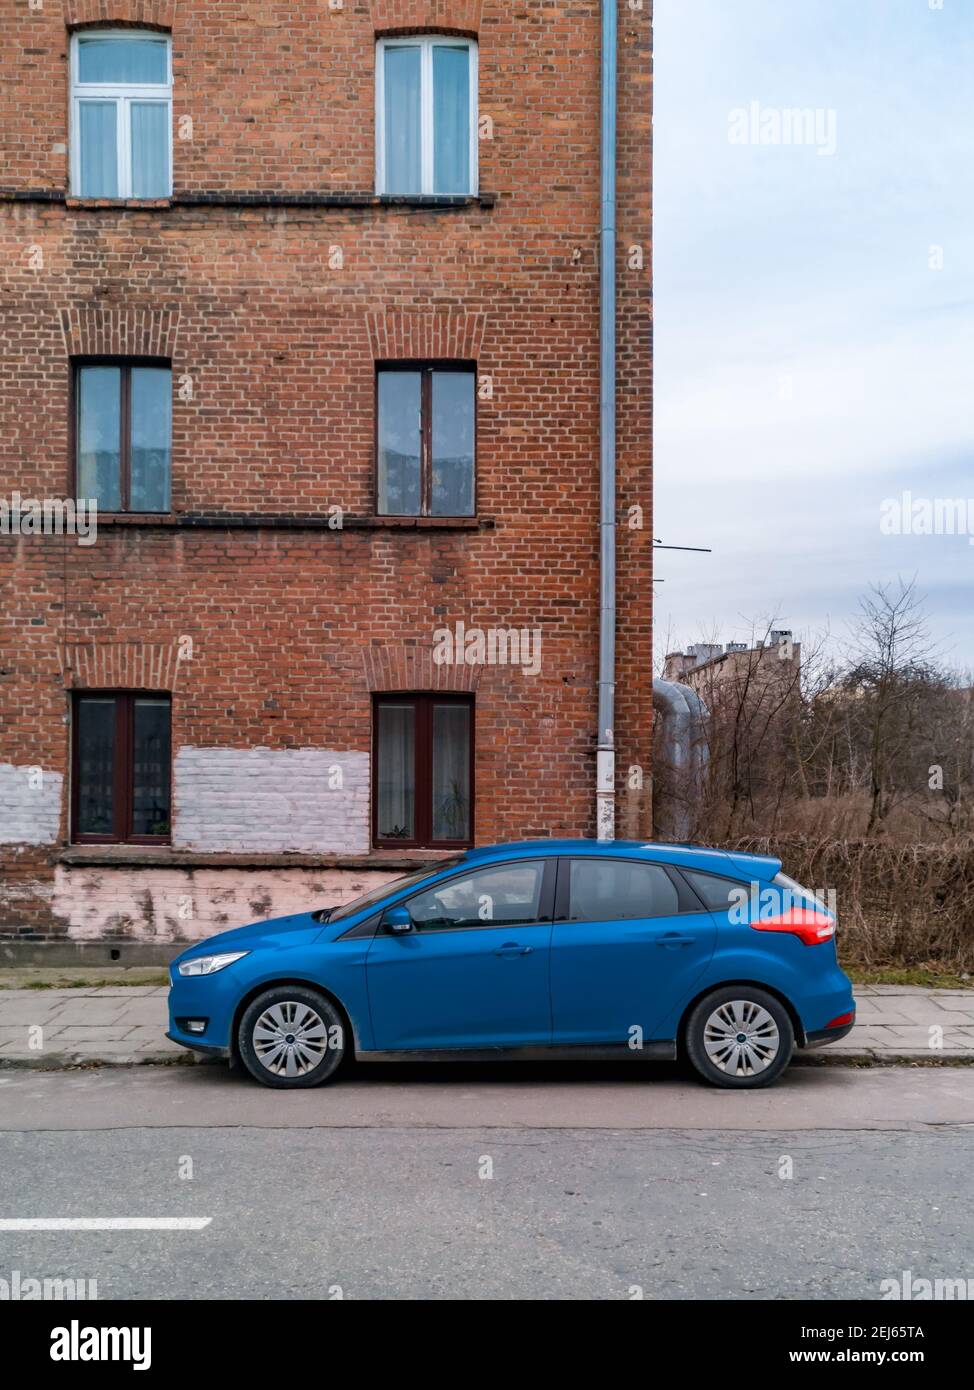 Lodz, Pologne - février 22 2020 voiture bleue située en face de l'ancien bâtiment en briques rouges Banque D'Images